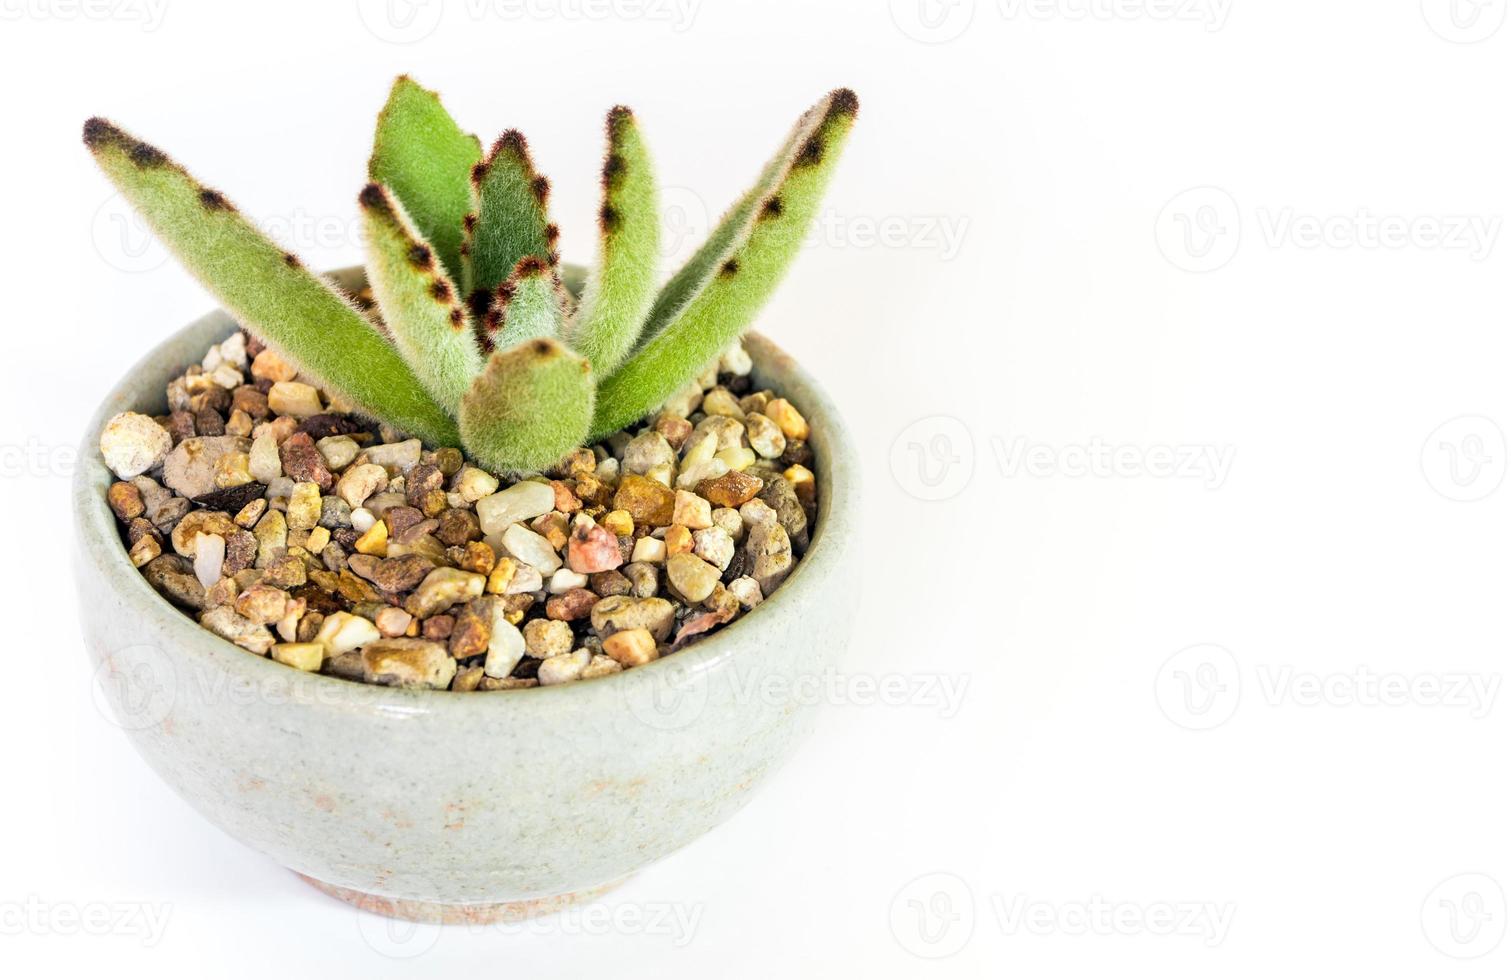 håriga blad av kalanchoe tomentosa suckulent växt i keramikkrukan foto